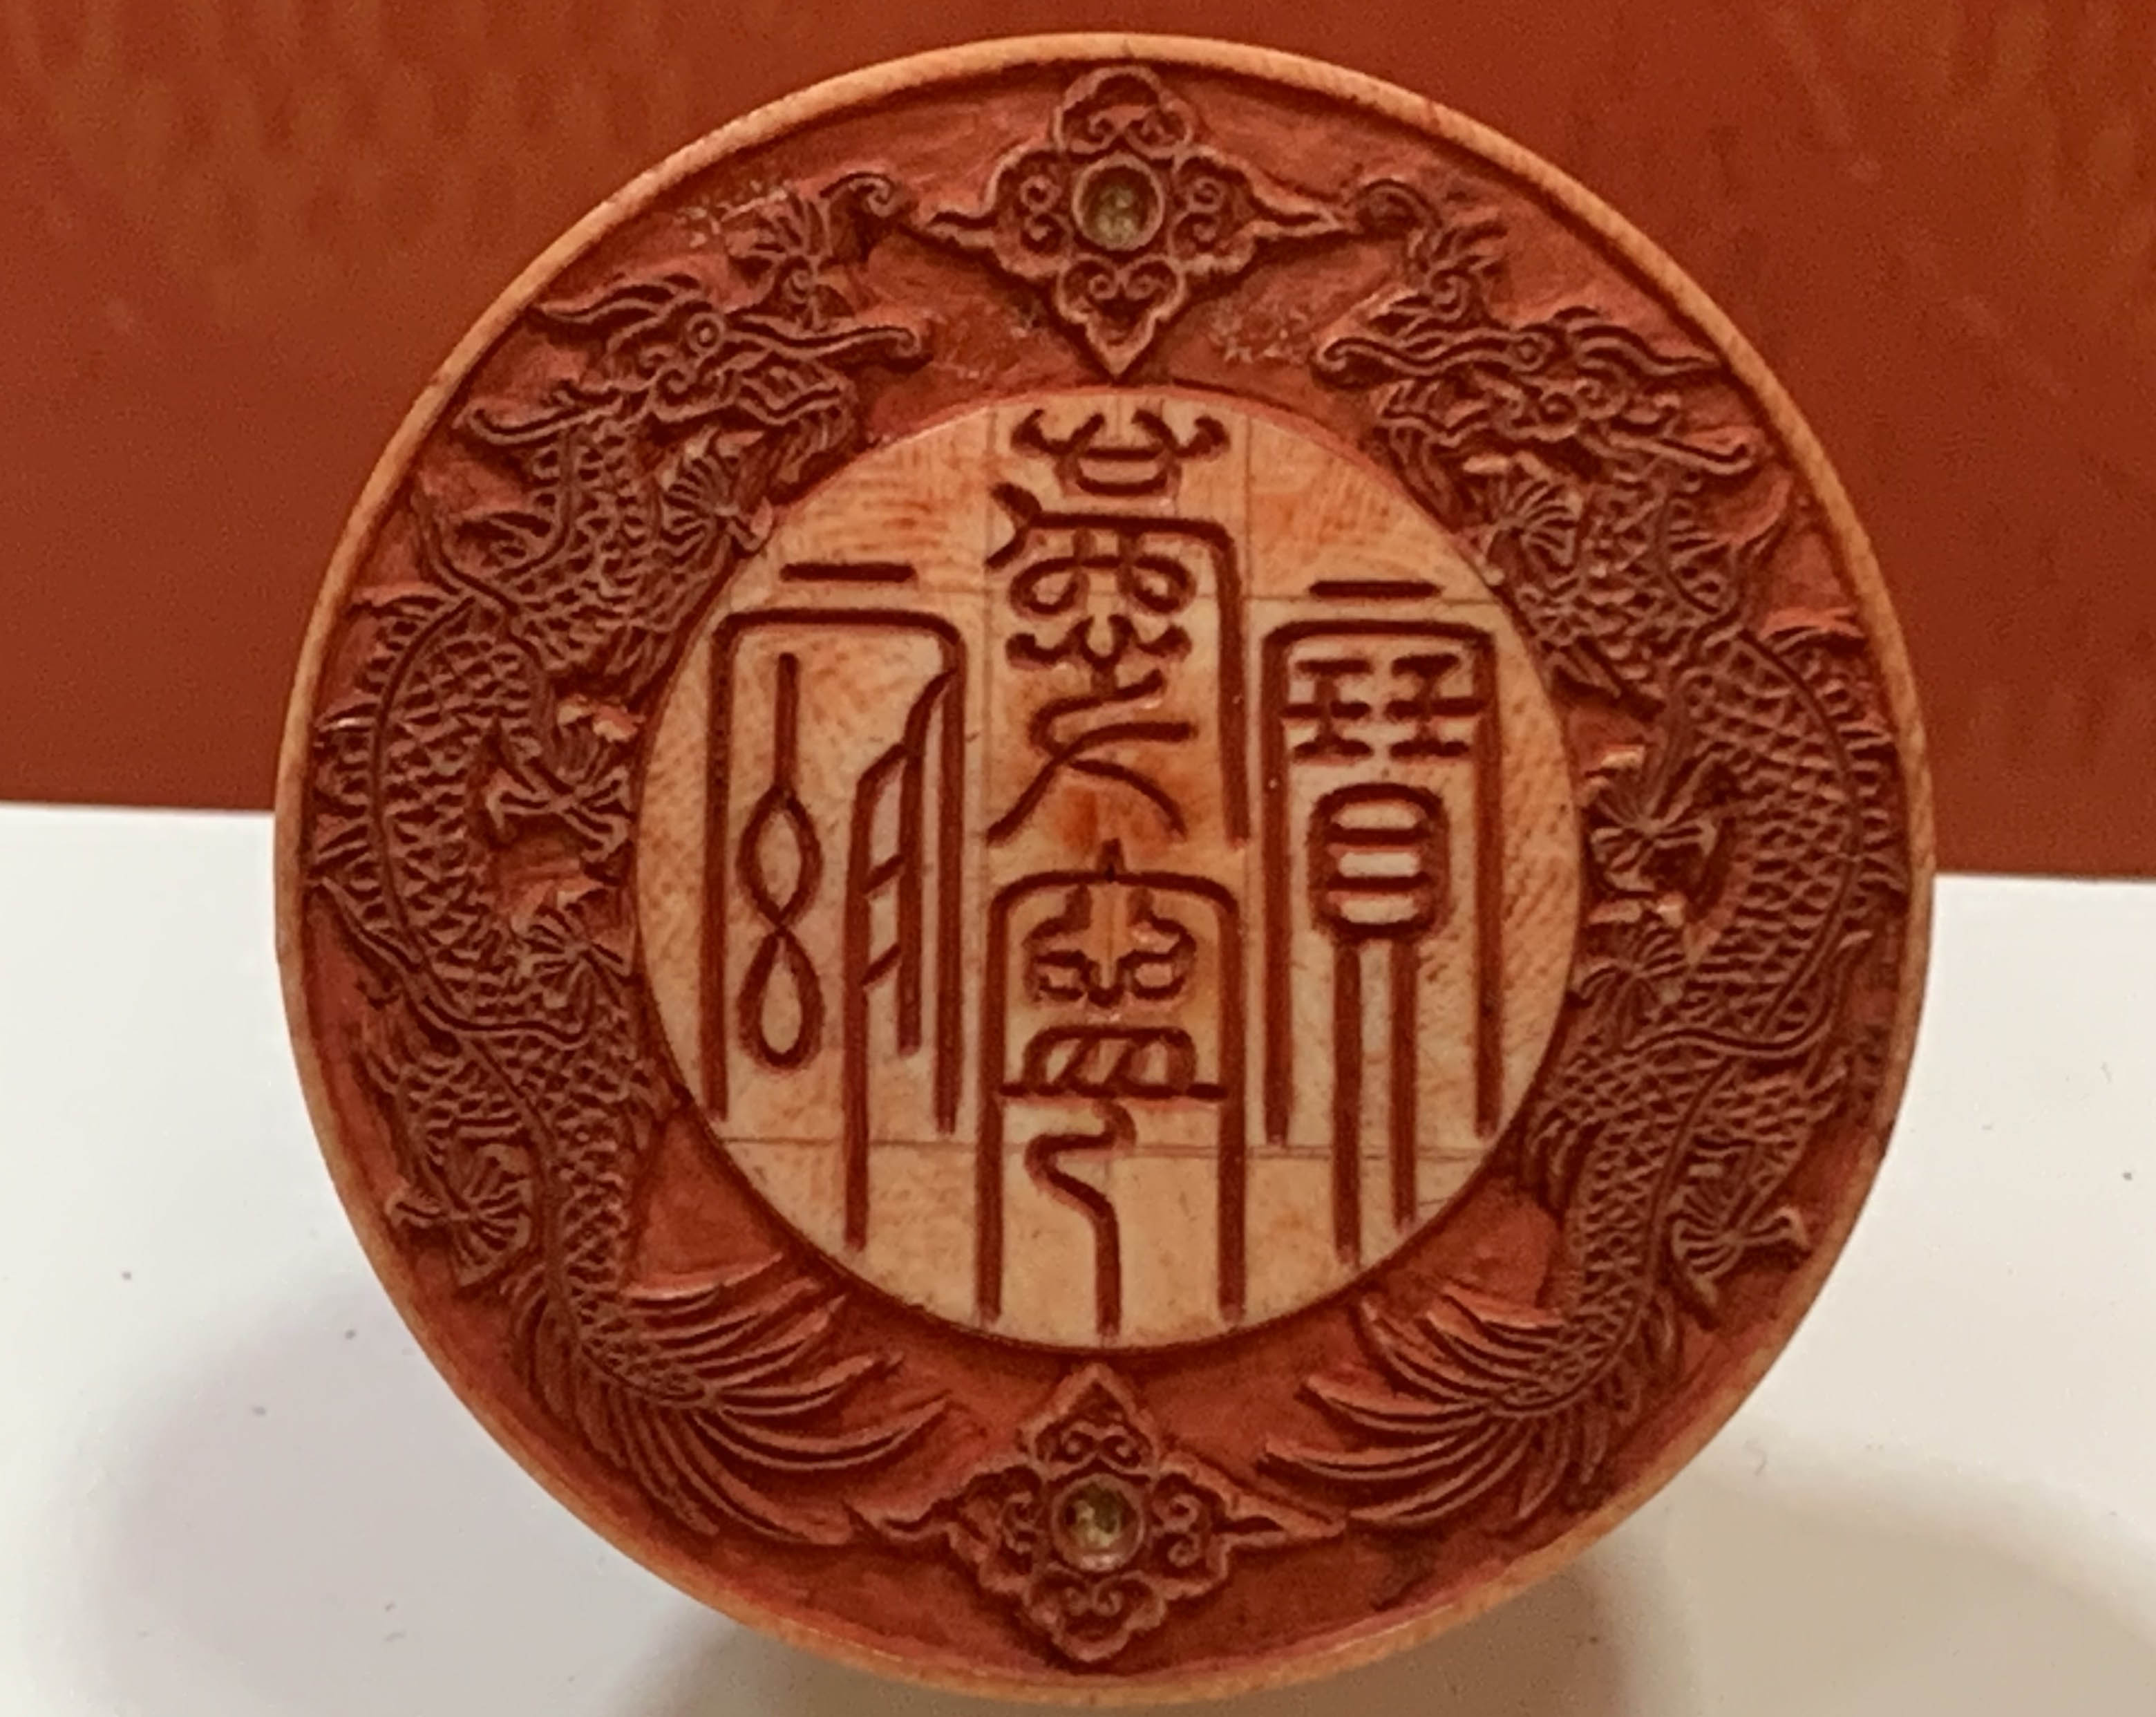 Con dấu “Khánh Ninh cung bảo” được chế tác thời Minh Mạng (trị vì từ 1820 đến 1841). Ấn được làm bằng ngà, trên dấu là hình ảnh “lưỡng long tranh châu”.